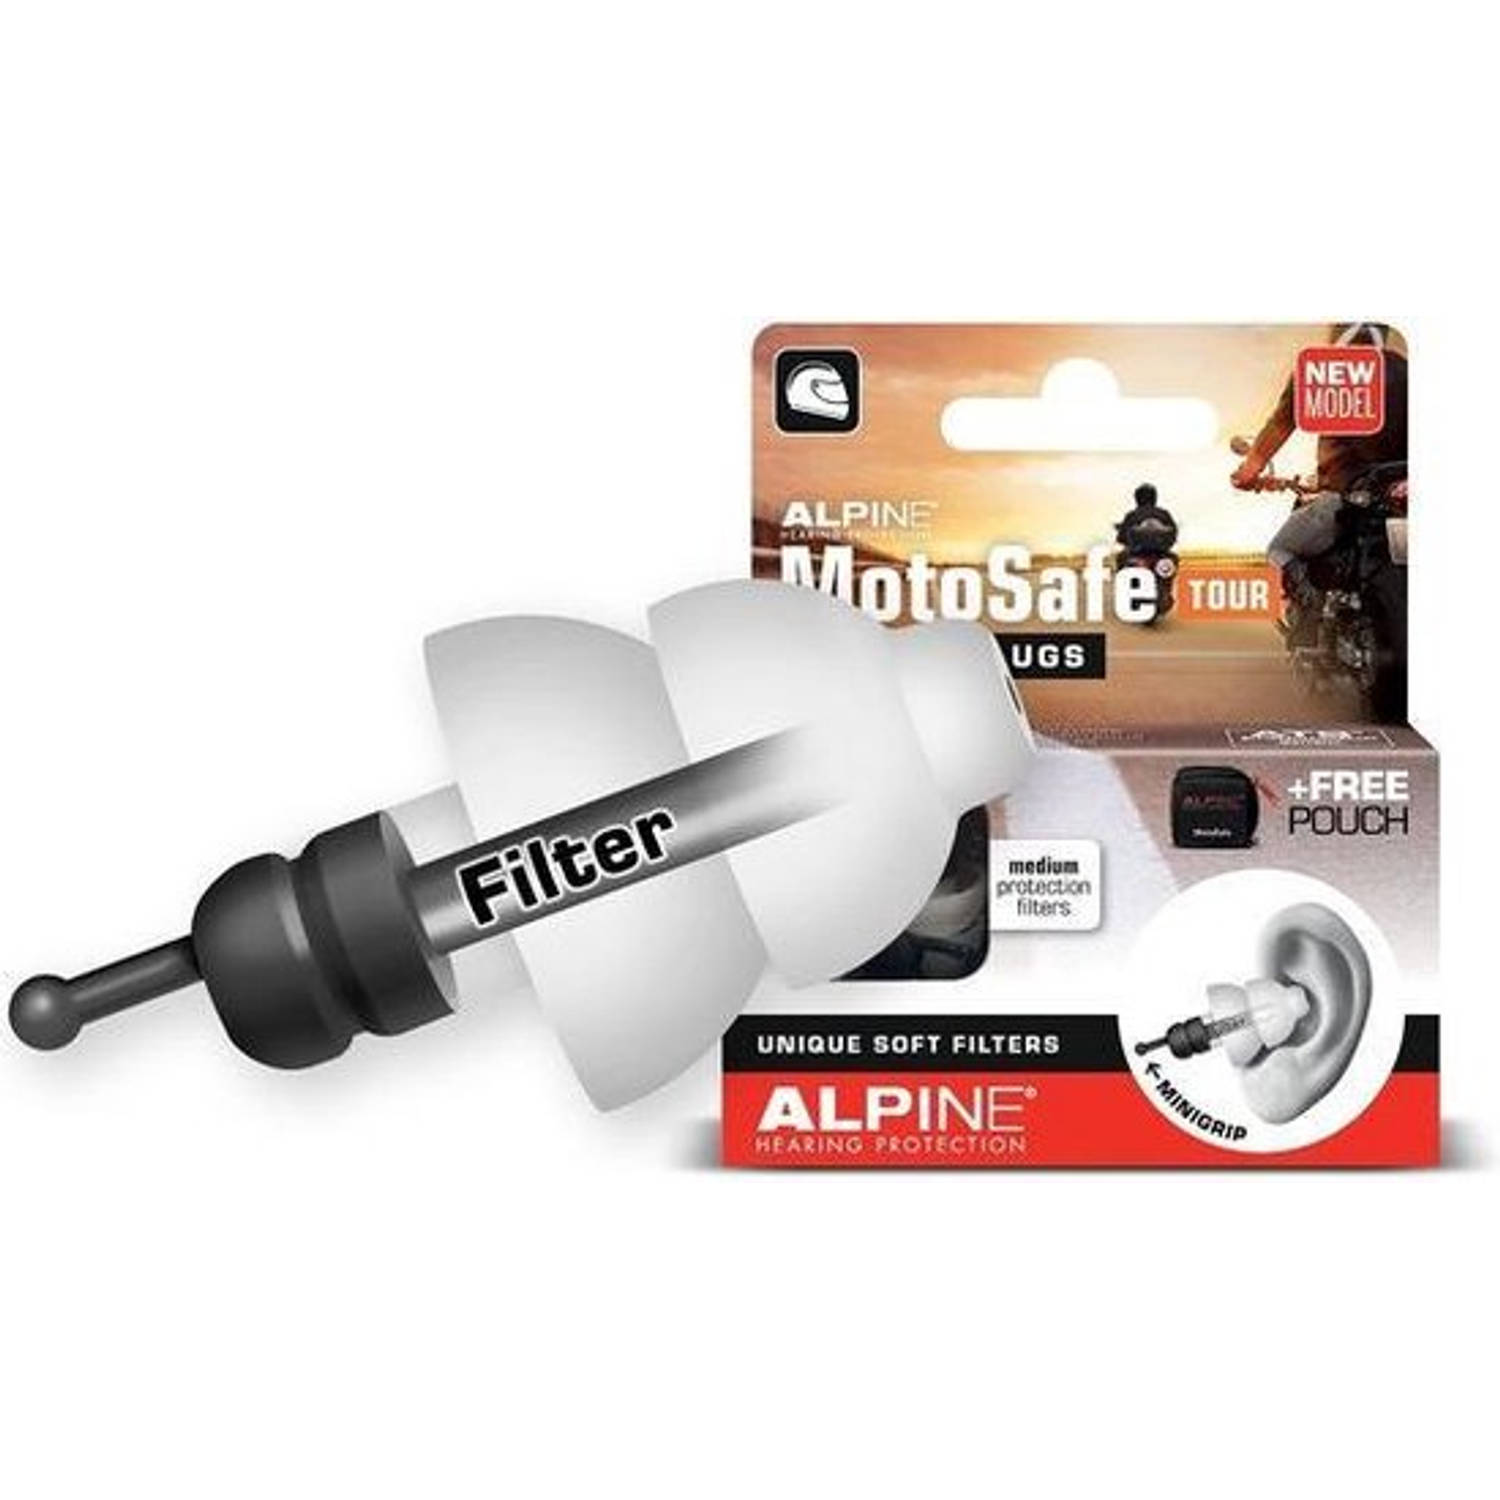 Alpine MotoSafe Tour Motor oordoppen voor Touring - Voorkomt gehoorbeschadiging - Verkeer hoorbaar - hypoallergeen